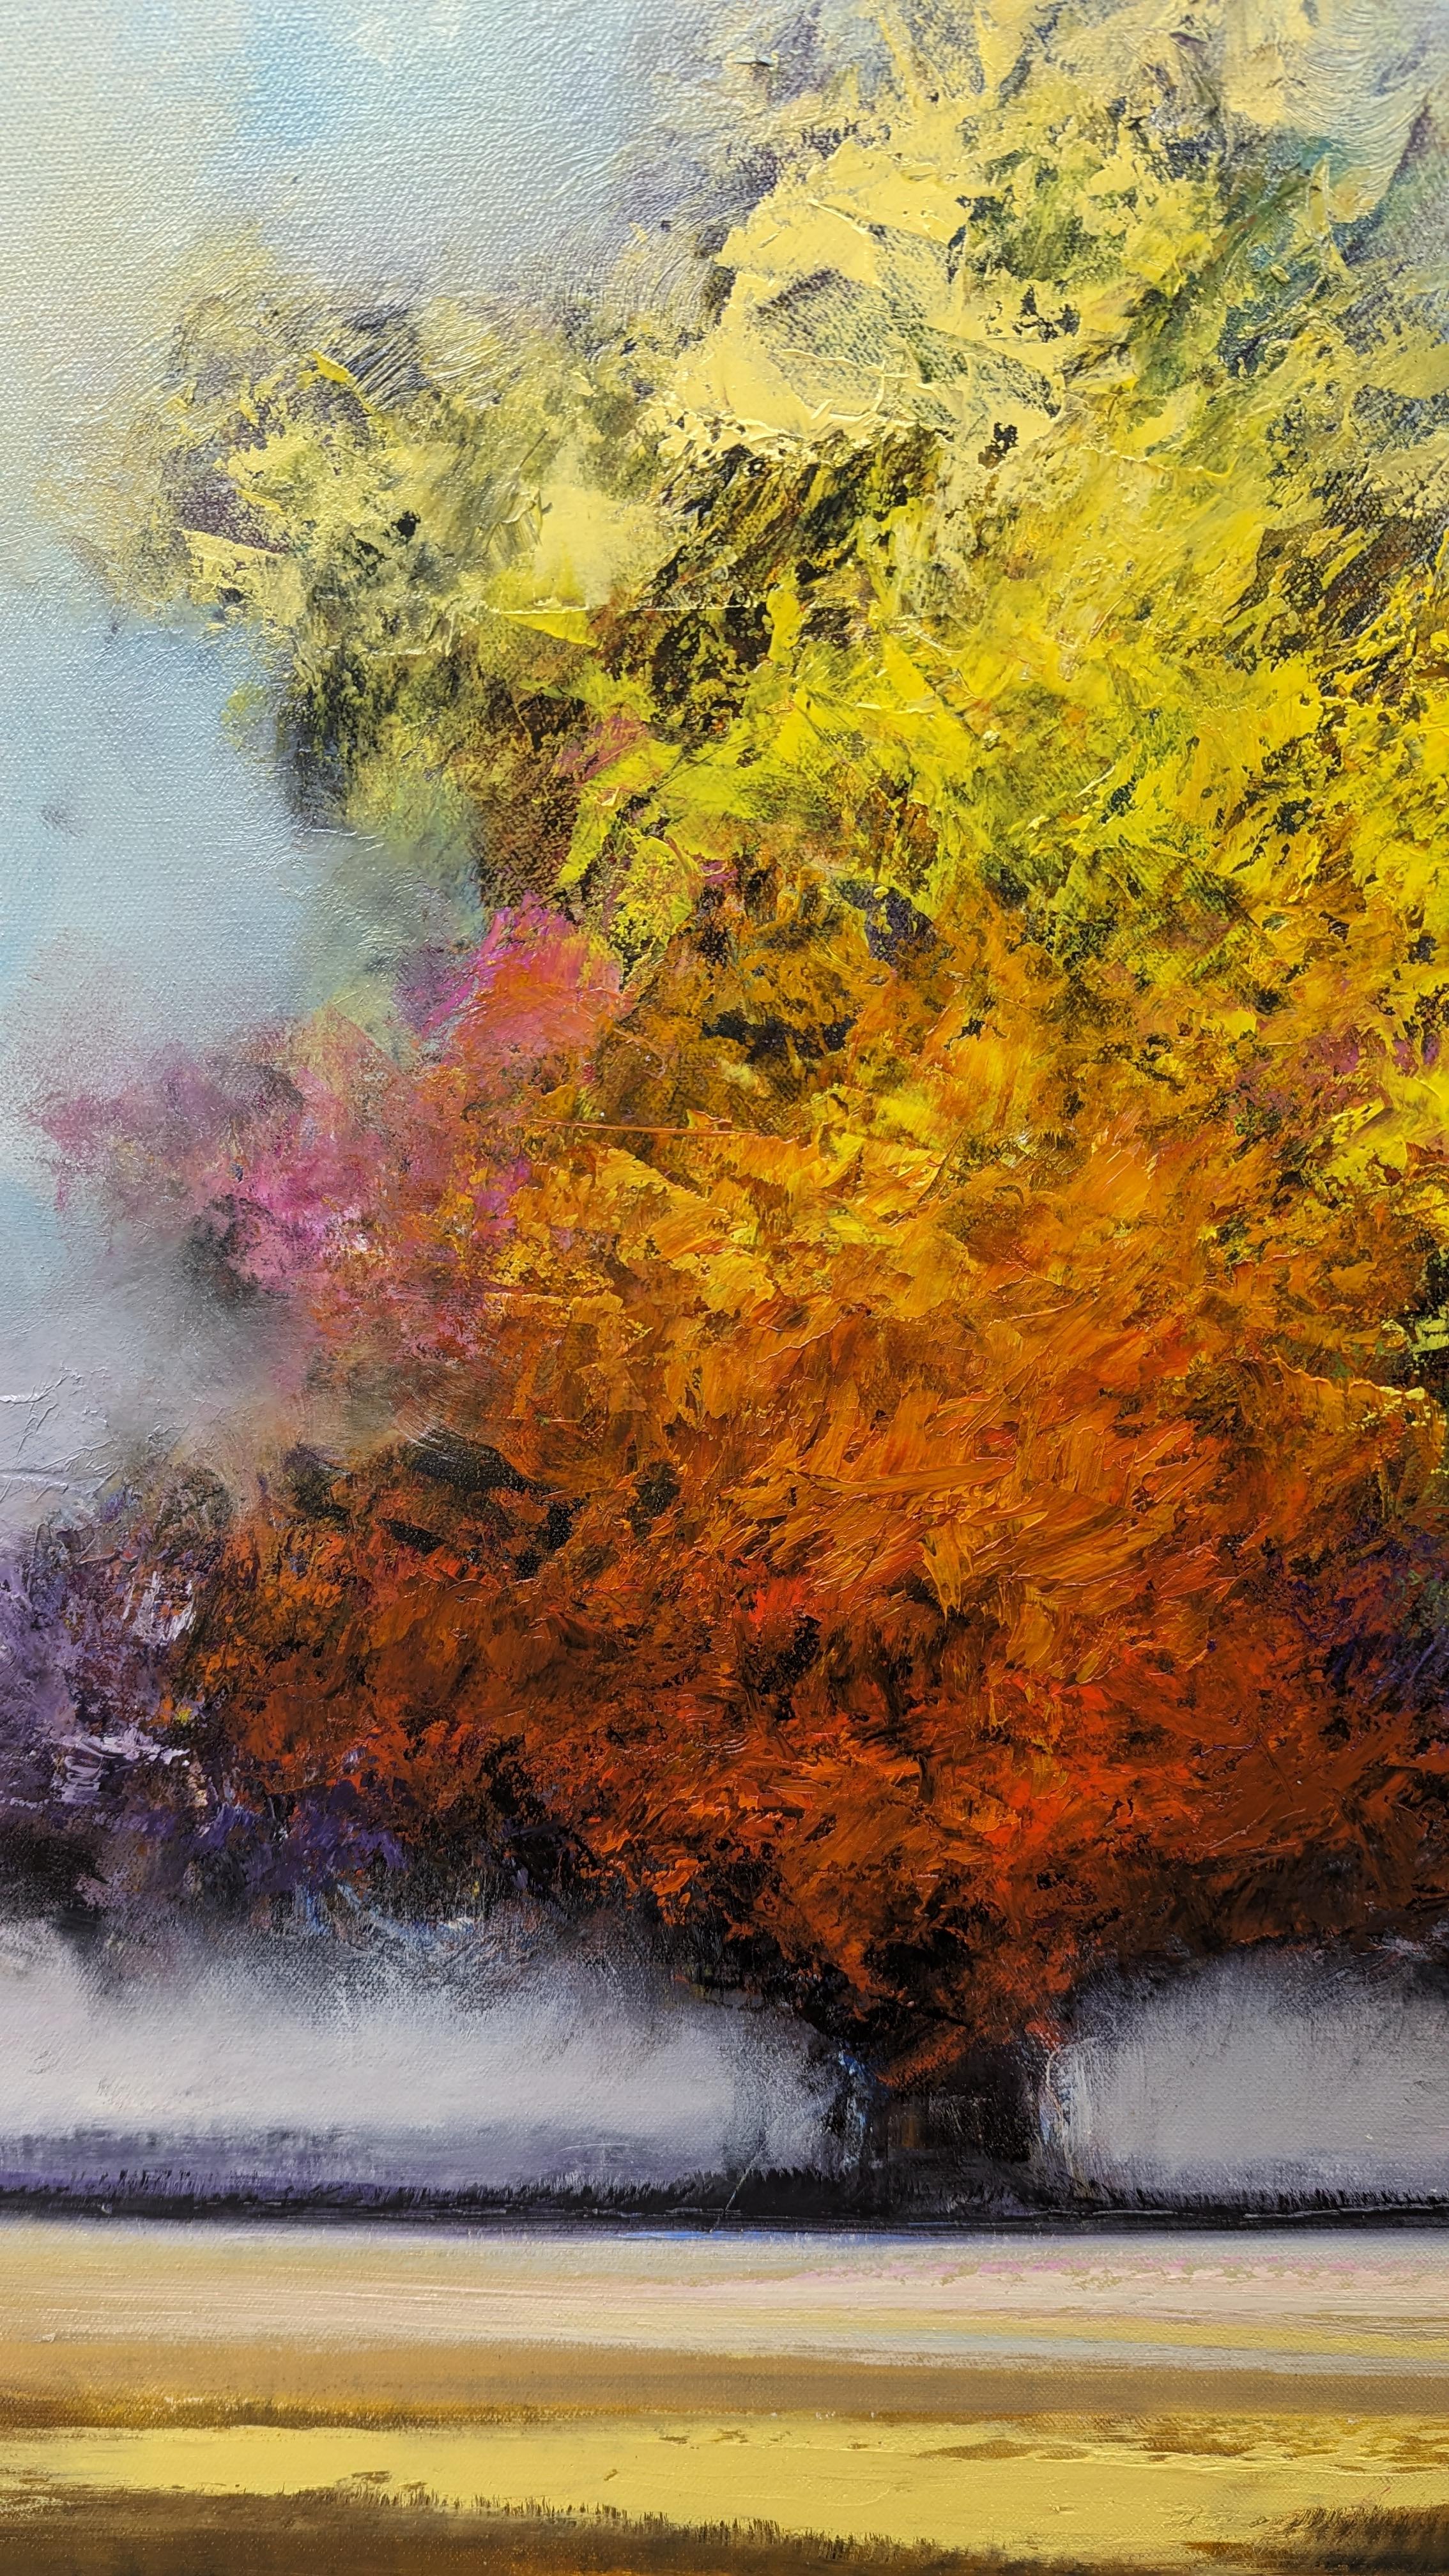 <p>Kommentare des Künstlers<br>Das Gemälde zeigt einen Baum mit buntem Laub inmitten eines weiten Feldes. Die Blätter sind gelb und rot gefärbt, mit einem Hauch von Violett. Der Wind treibt die Wolken sanft über das Blätterdach und verleiht der